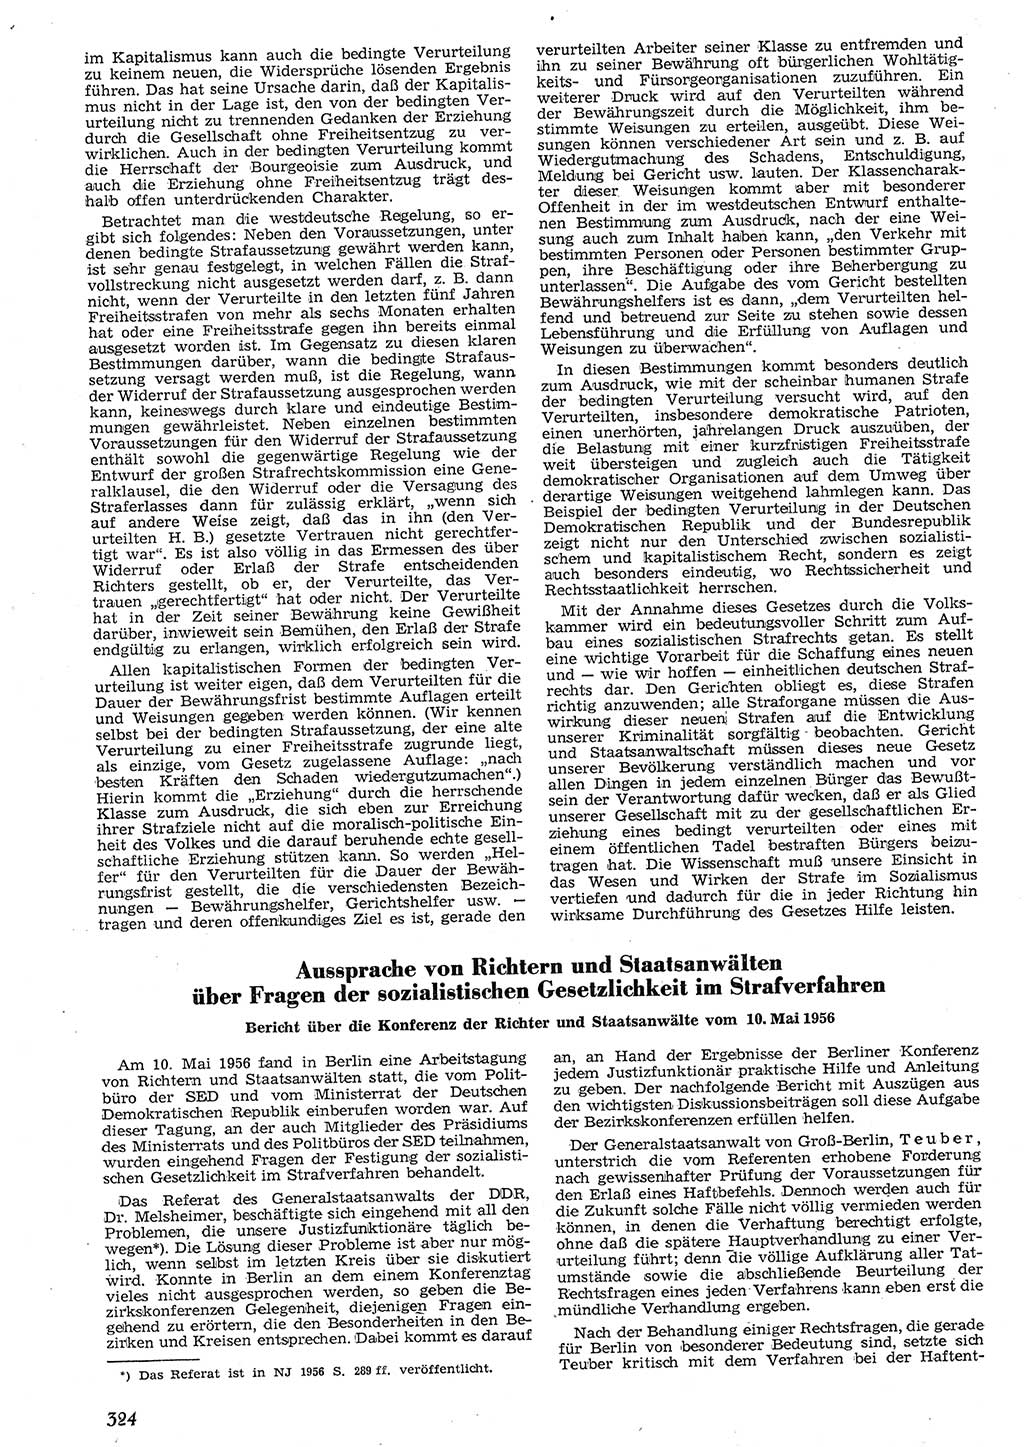 Neue Justiz (NJ), Zeitschrift für Recht und Rechtswissenschaft [Deutsche Demokratische Republik (DDR)], 10. Jahrgang 1956, Seite 324 (NJ DDR 1956, S. 324)